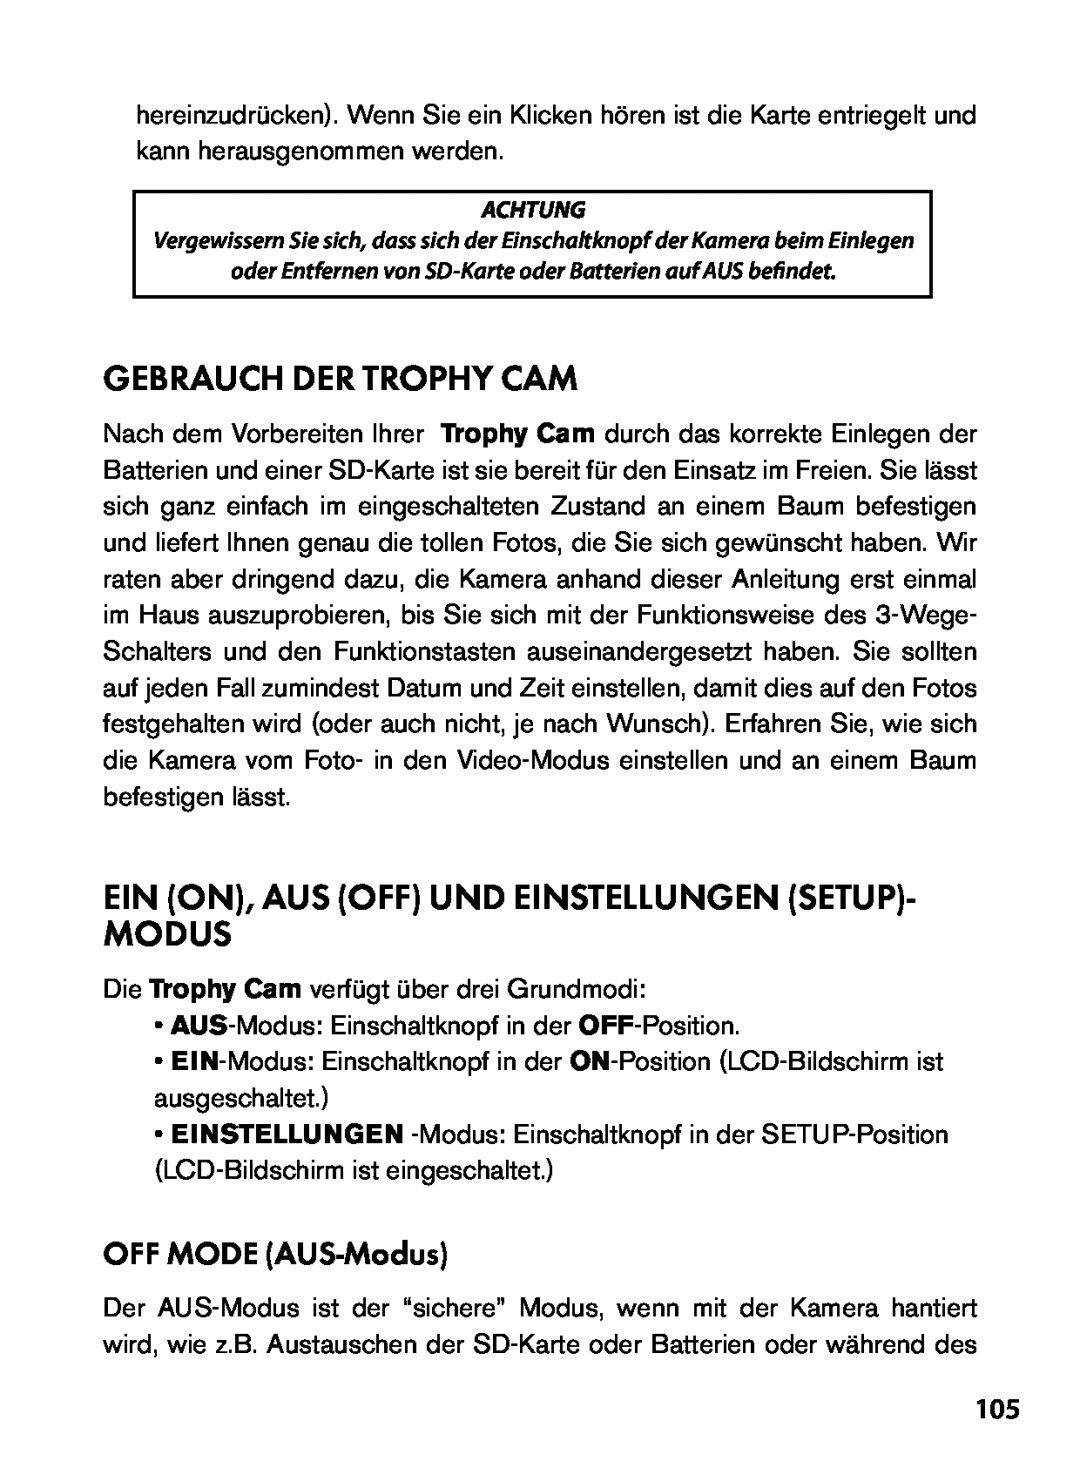 Bushnell 119455, 119445, 119435 Gebrauch Der Trophy Cam, Ein On, Aus Off Und Einstellungen Setup Modus, OFF MODE AUS-Modus 